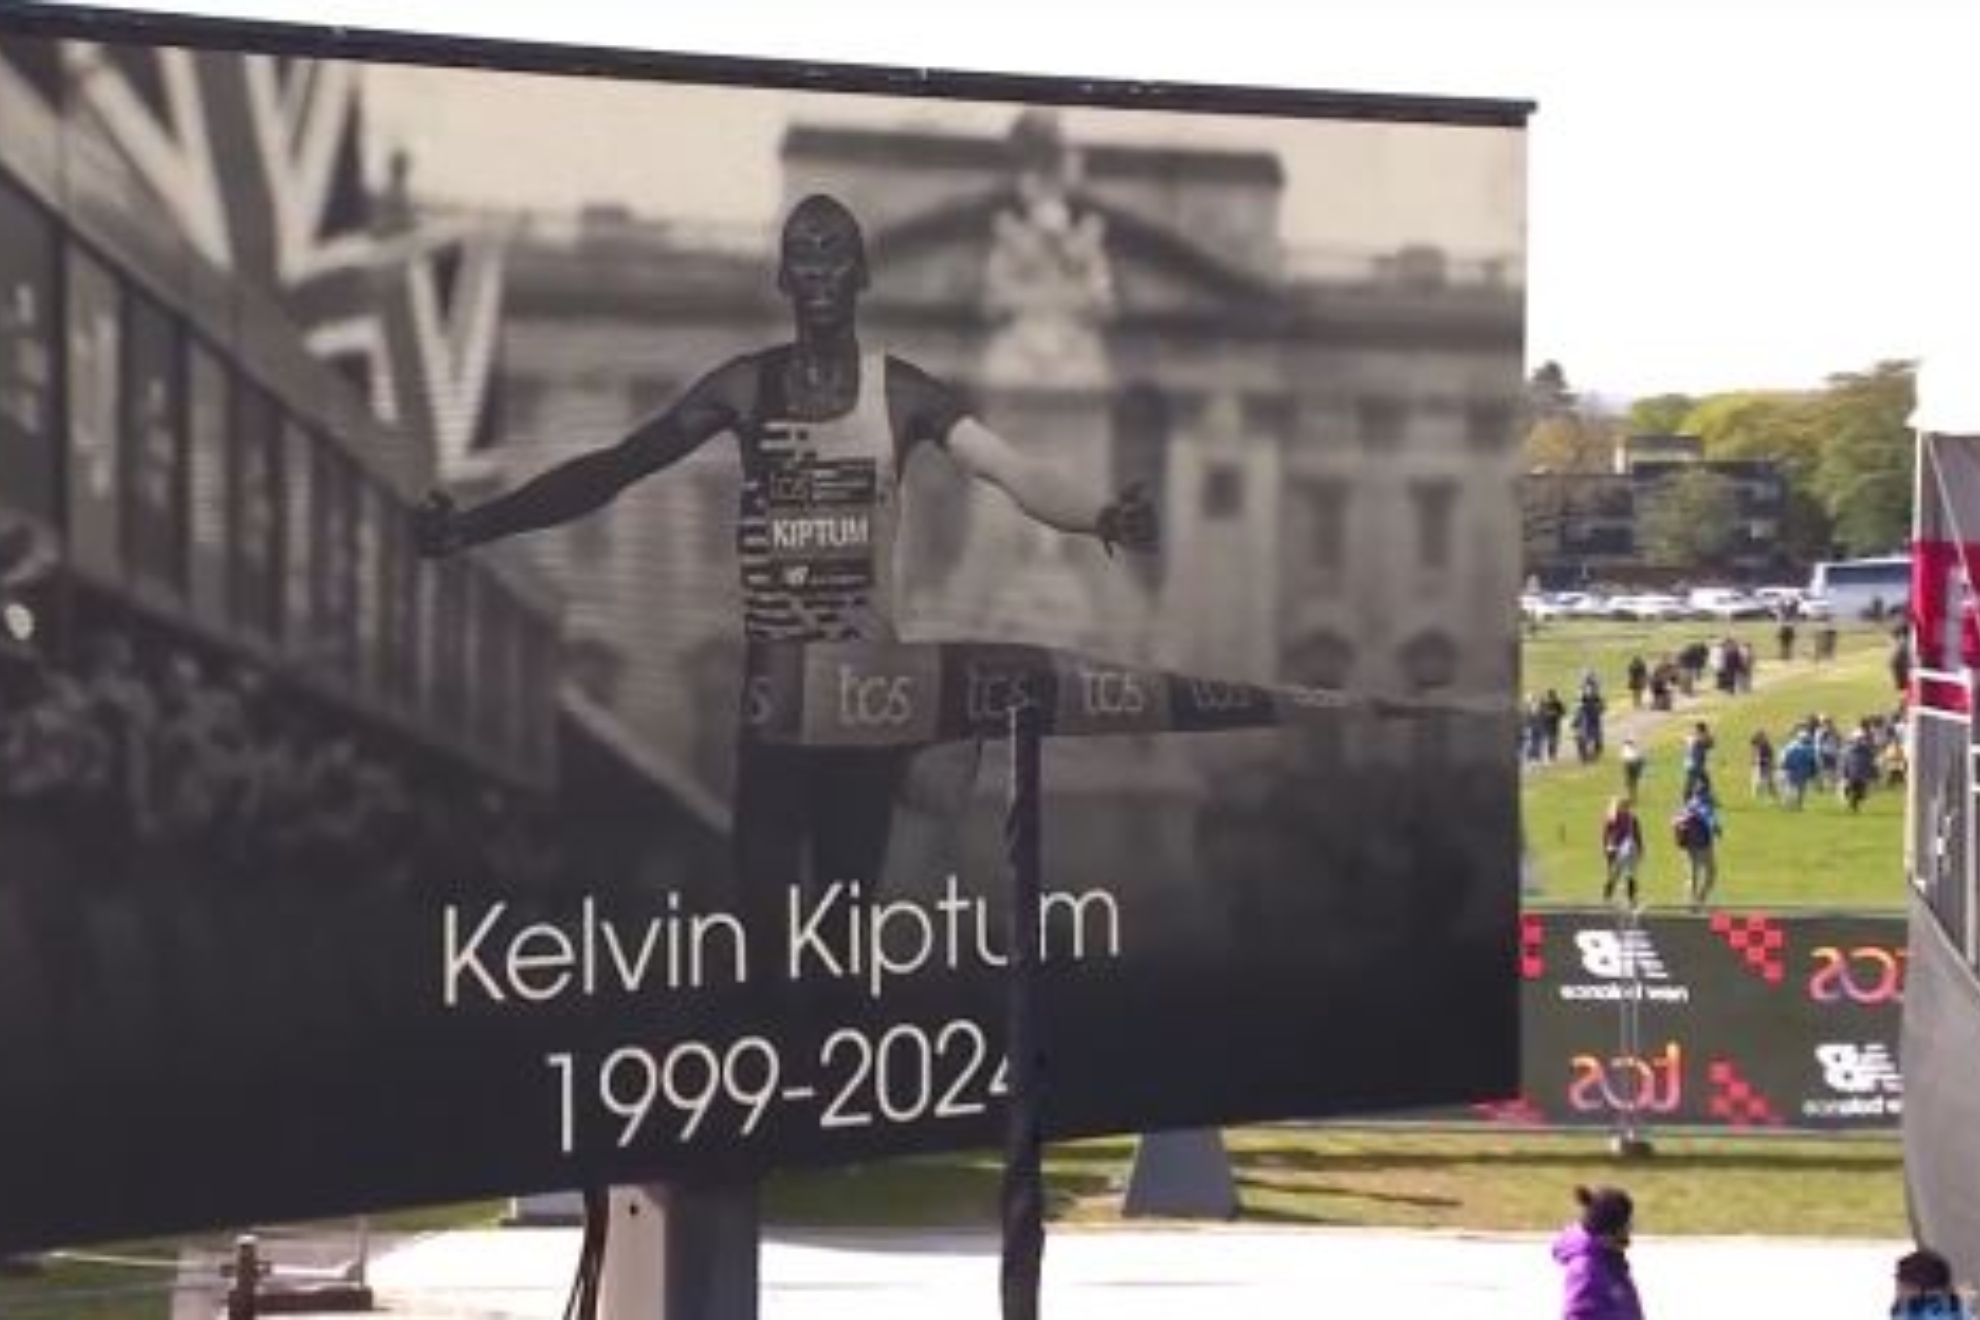 Emotivo homenaje al malogrado Kelvin Kiptum antes del maratn de Londres